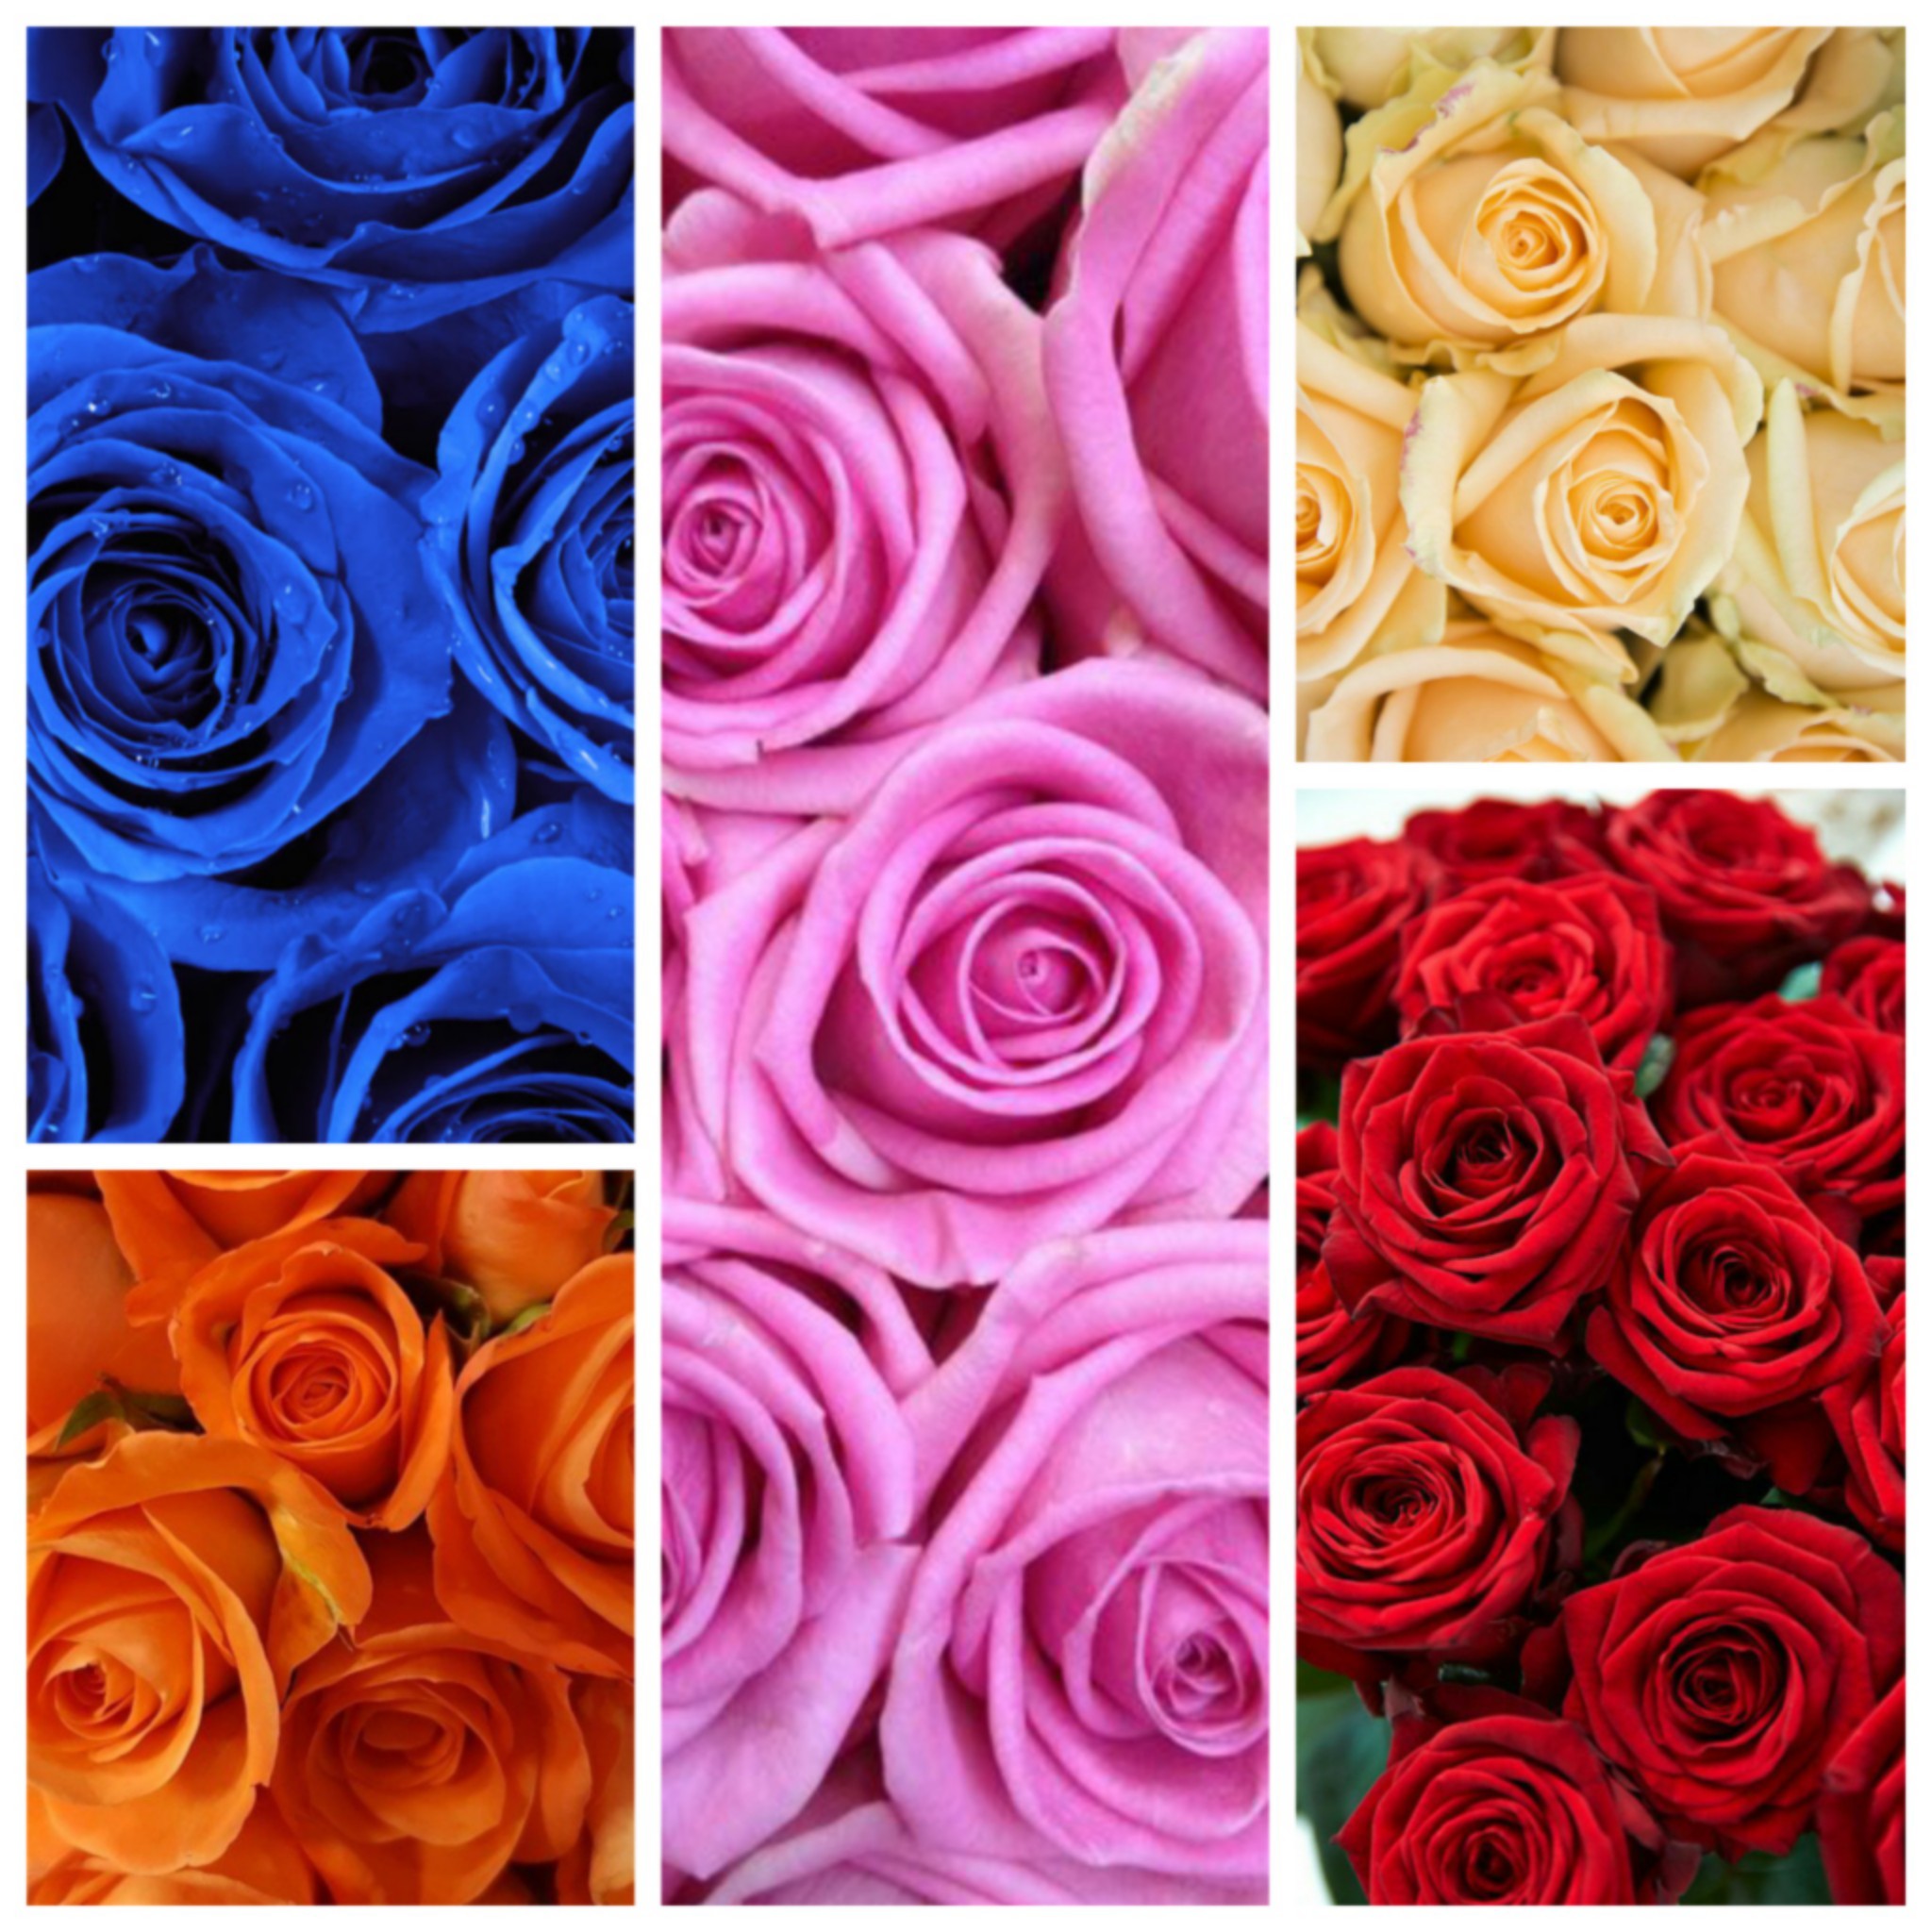  El significado de las rosas según su color